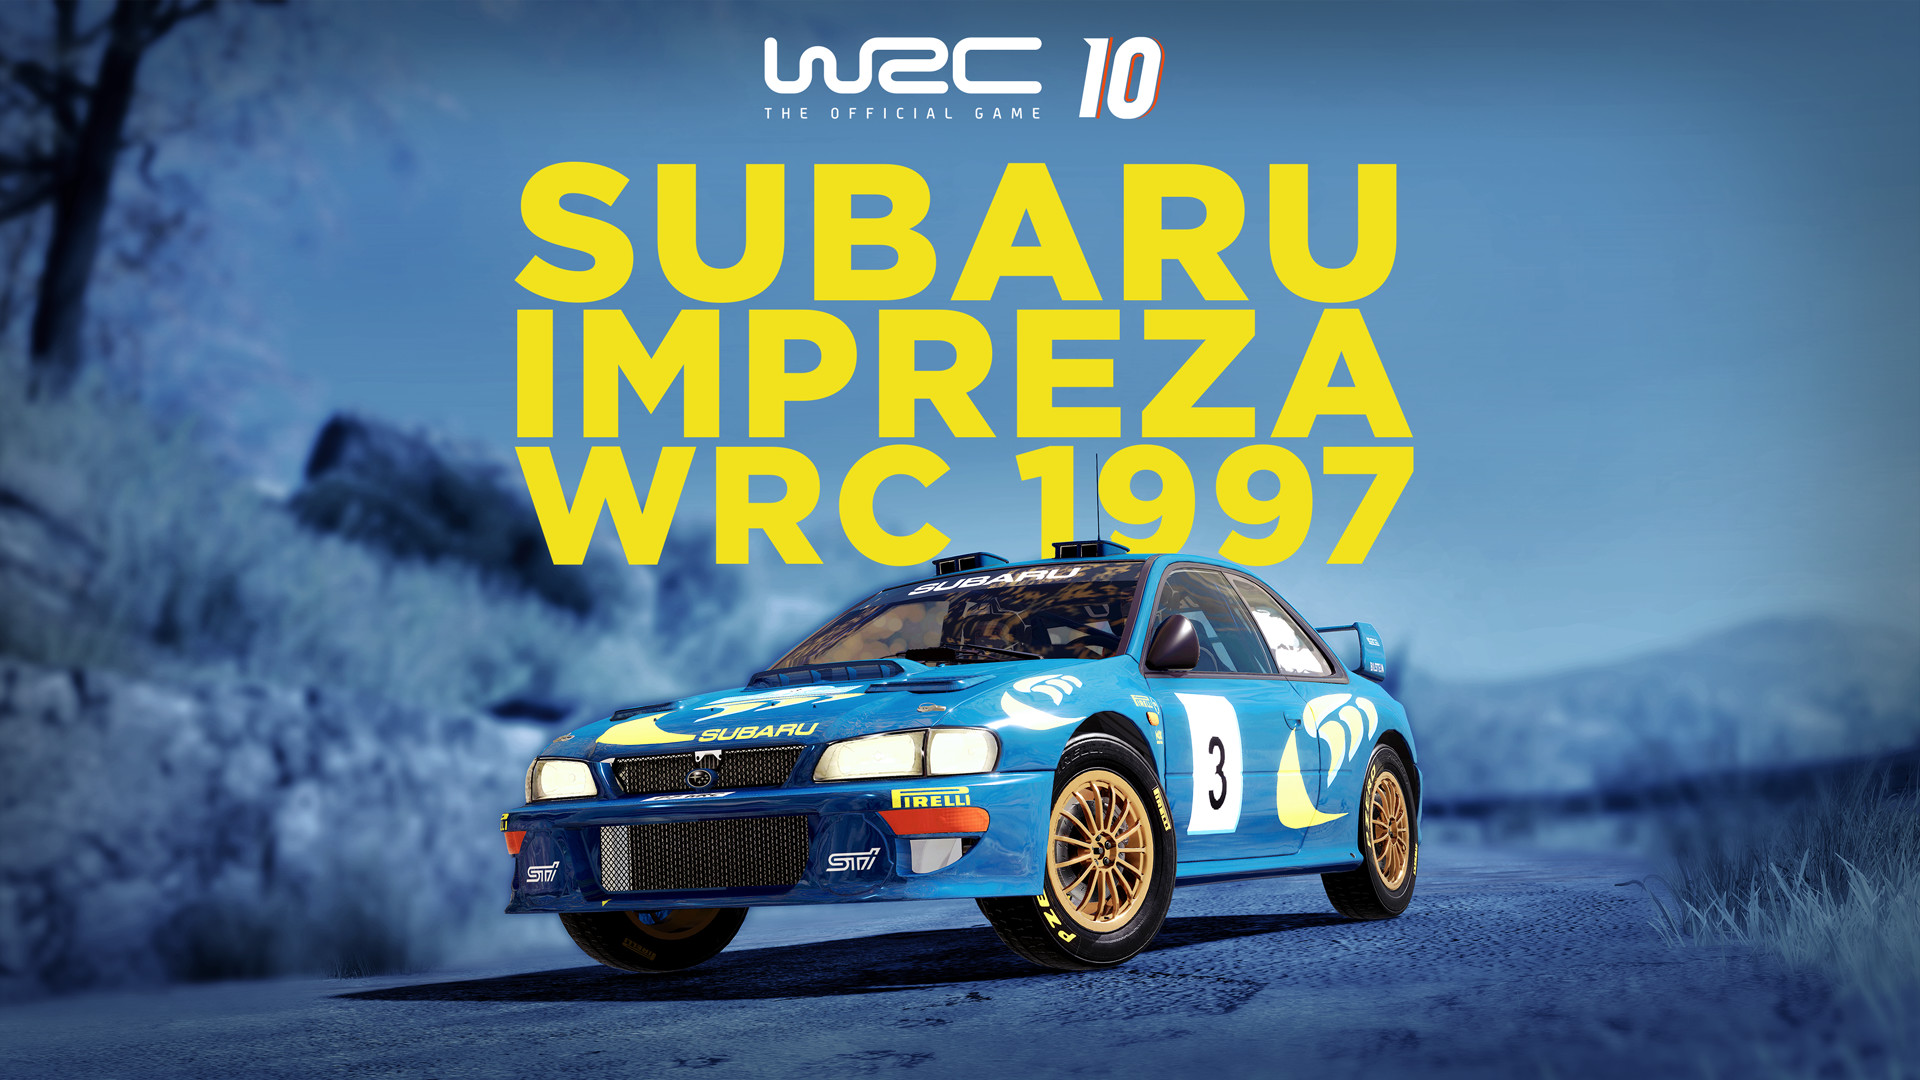 [$ 3.33] WRC 10 - Subaru Impreza WRC 1997 DLC Steam CD Key